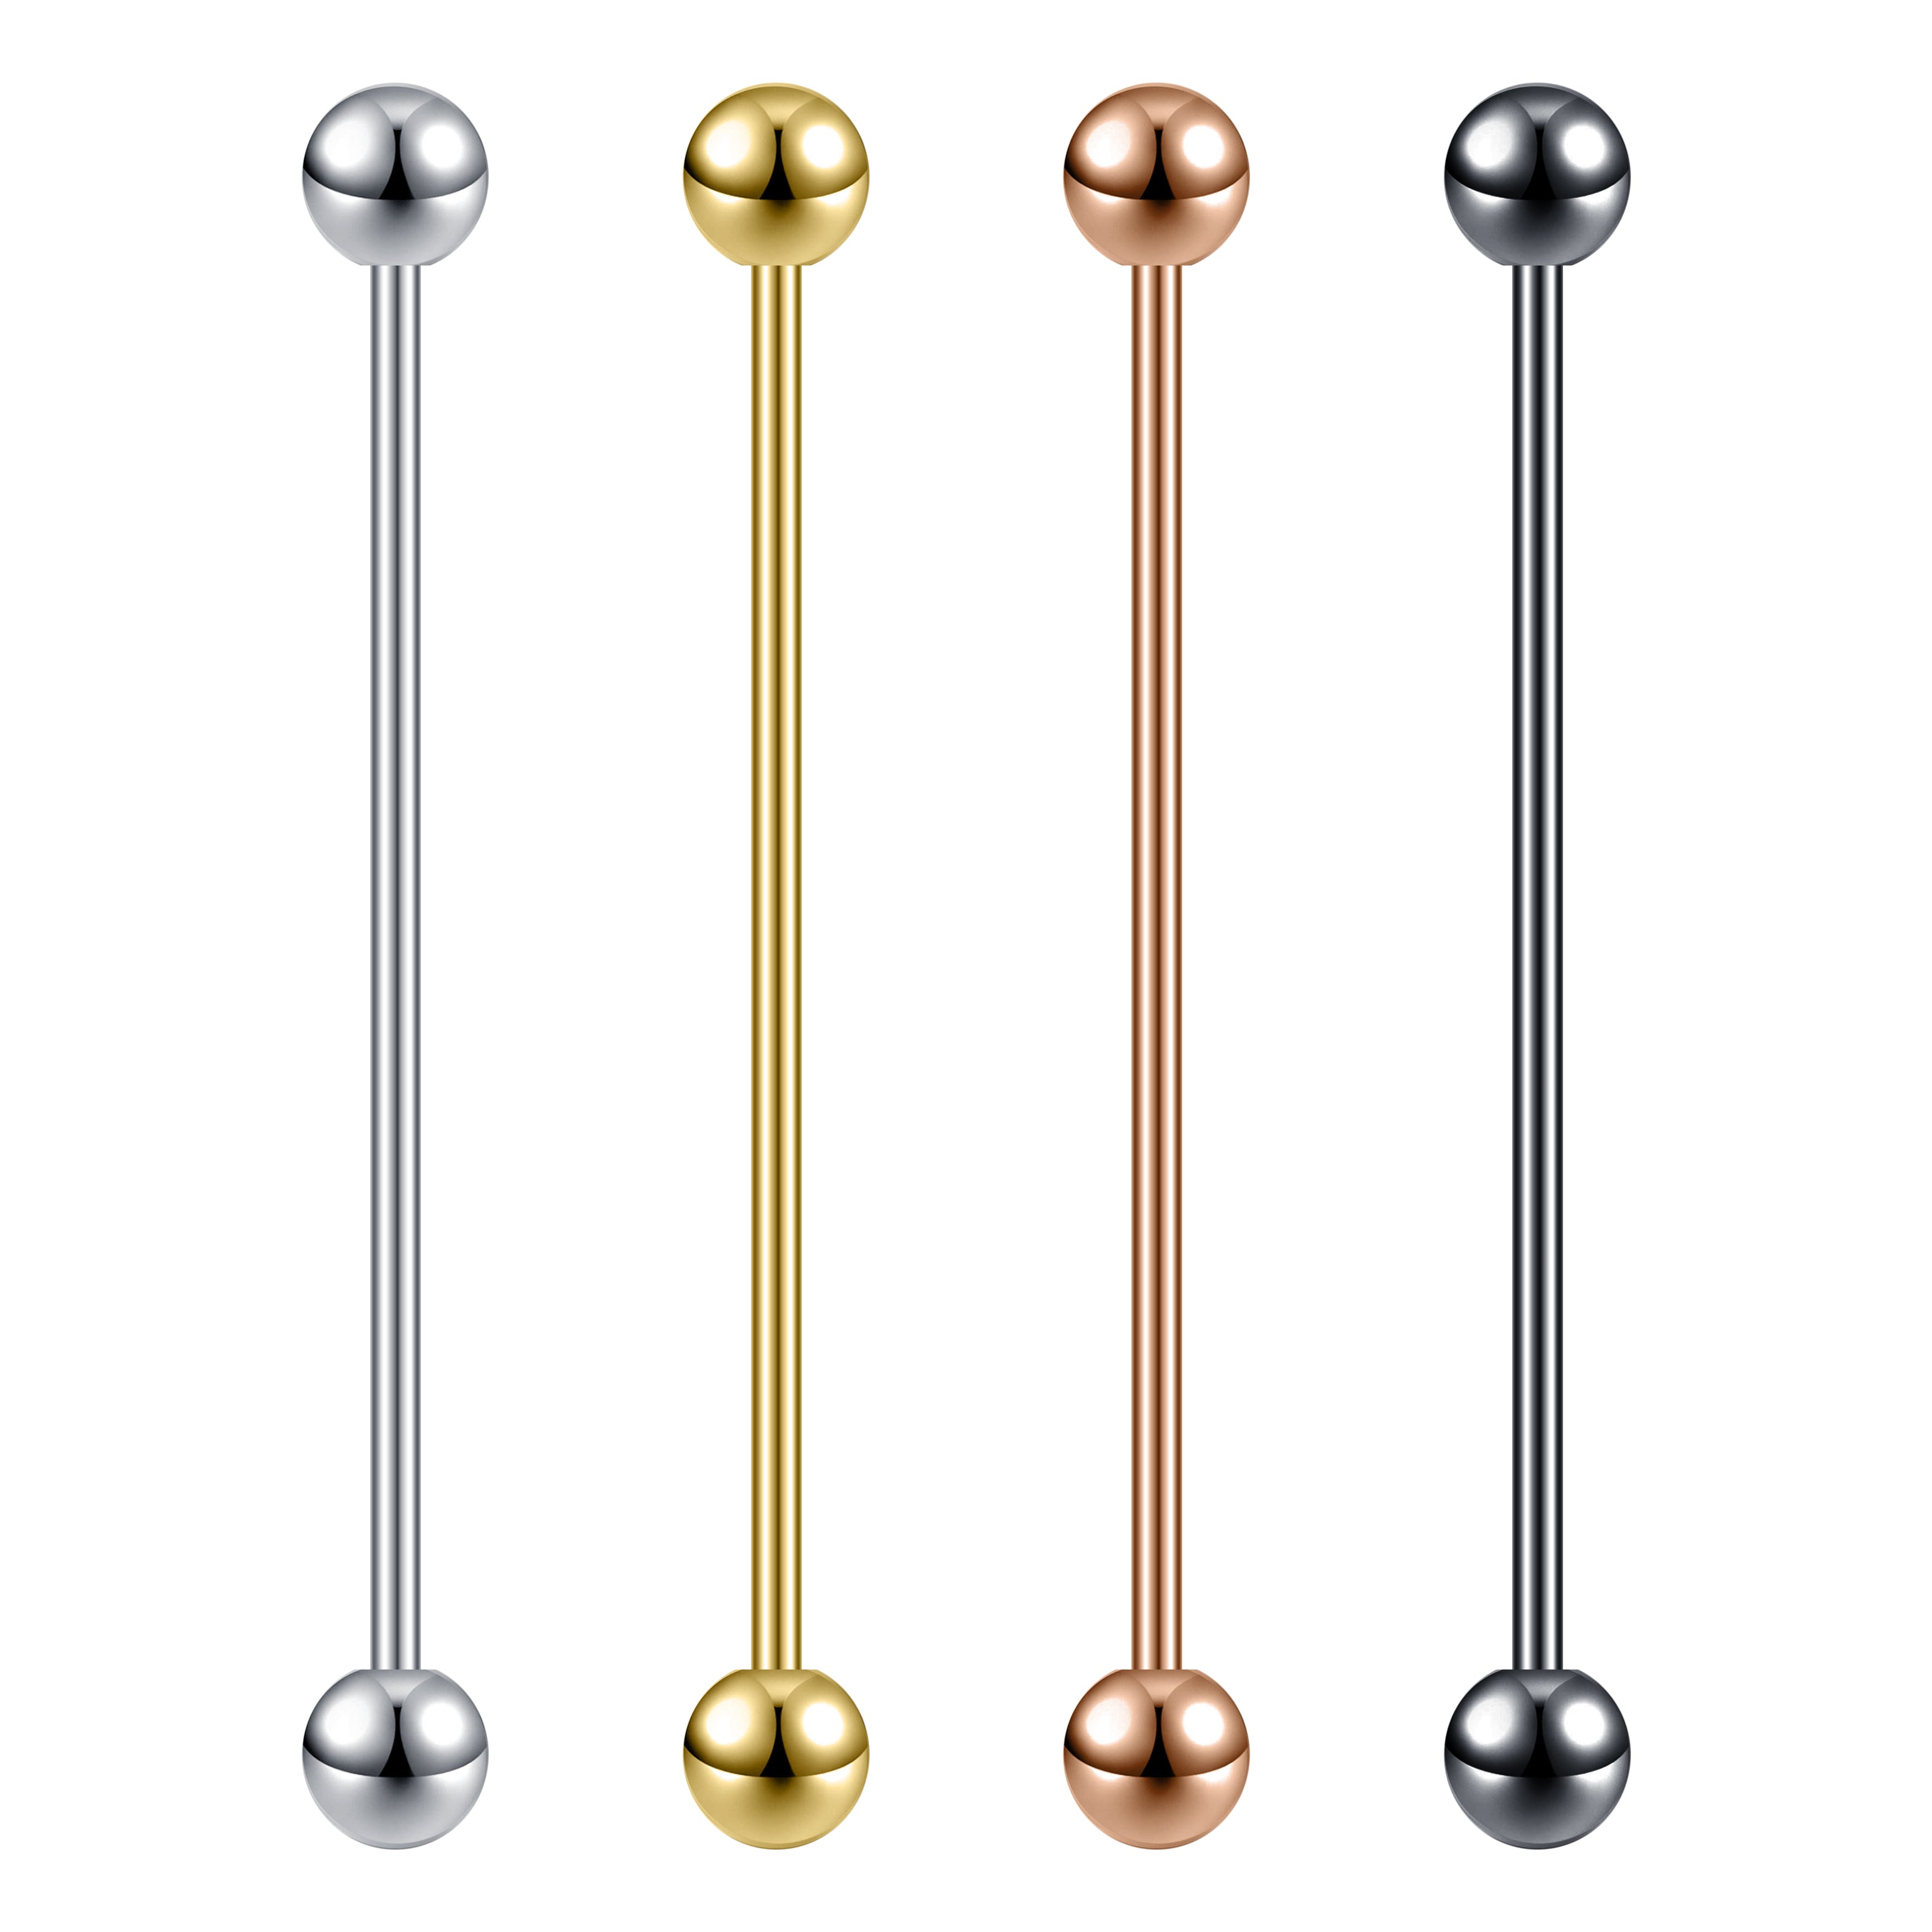 14g-industrial-barbell-earring-ball-ear-helix-piercings